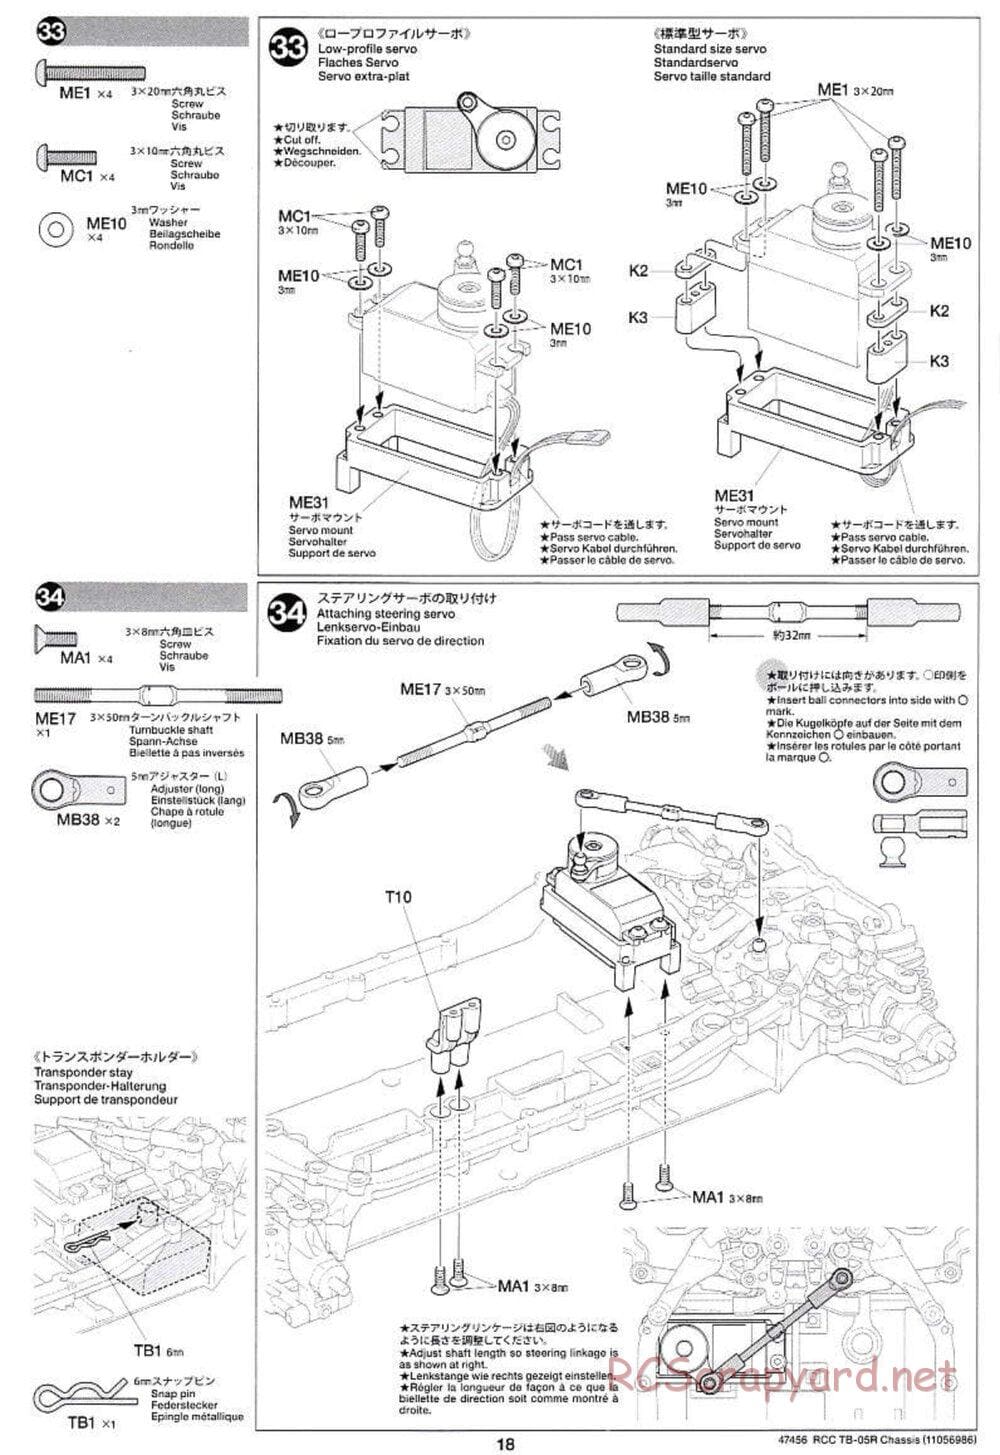 Tamiya - TB-05R Chassis - Manual - Page 18